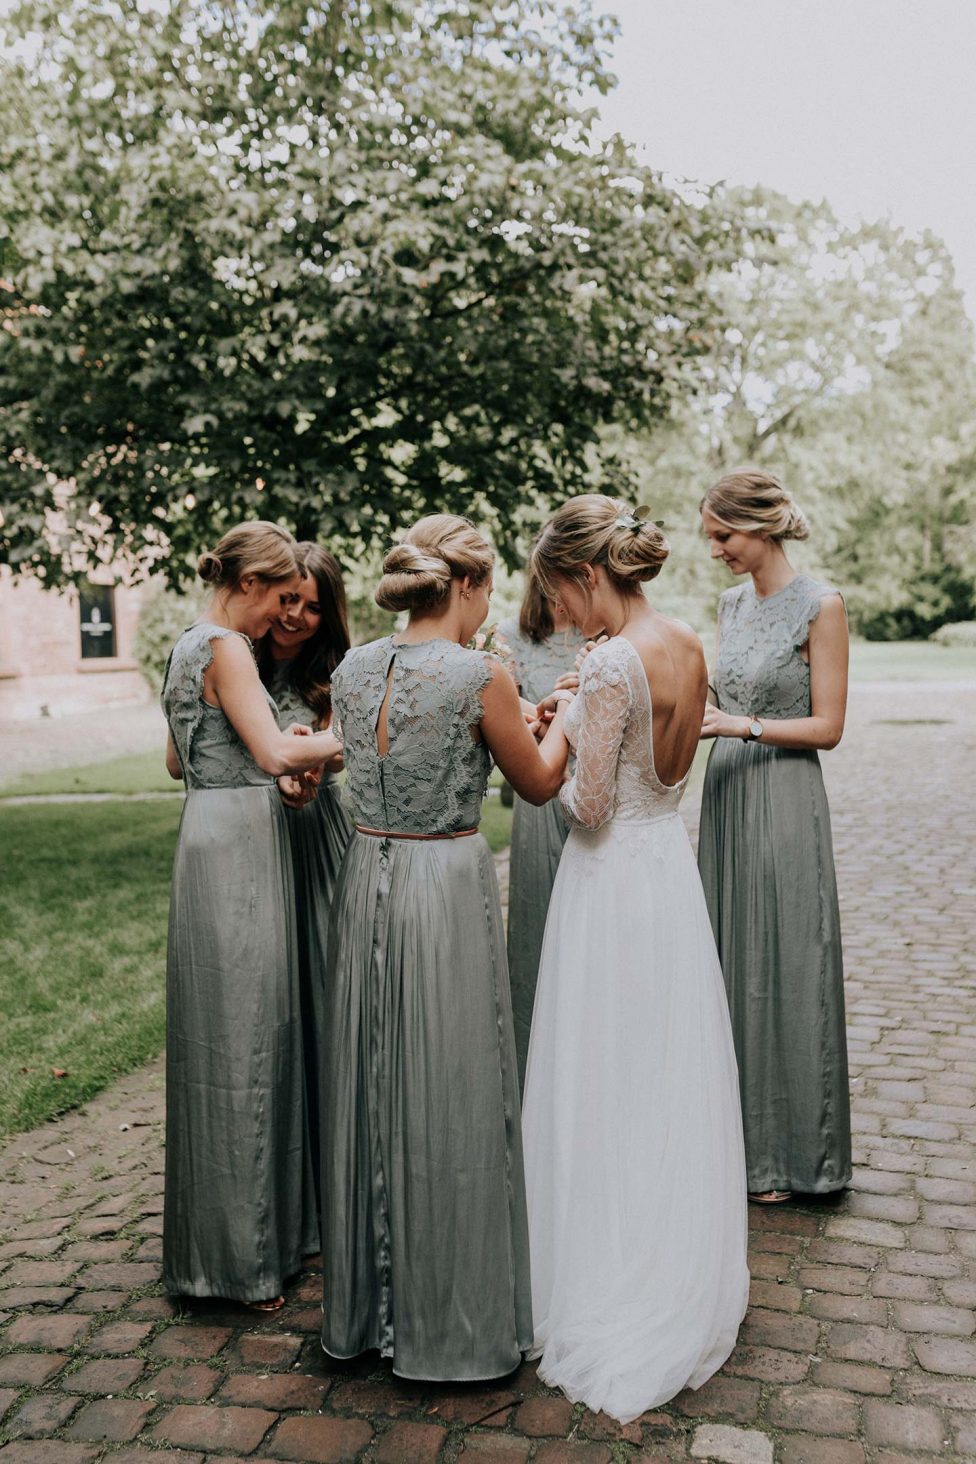 Hochzeitswahn - Vier elegant gekleidete Frauen – eine Braut in Weiß und drei Brautjungfern in Grau – teilen einen freudigen Moment miteinander, mit dem Rücken zur Kamera, und enthüllen komplizierte Kleiderdetails und eine warme, unterstützende Atmosphäre.